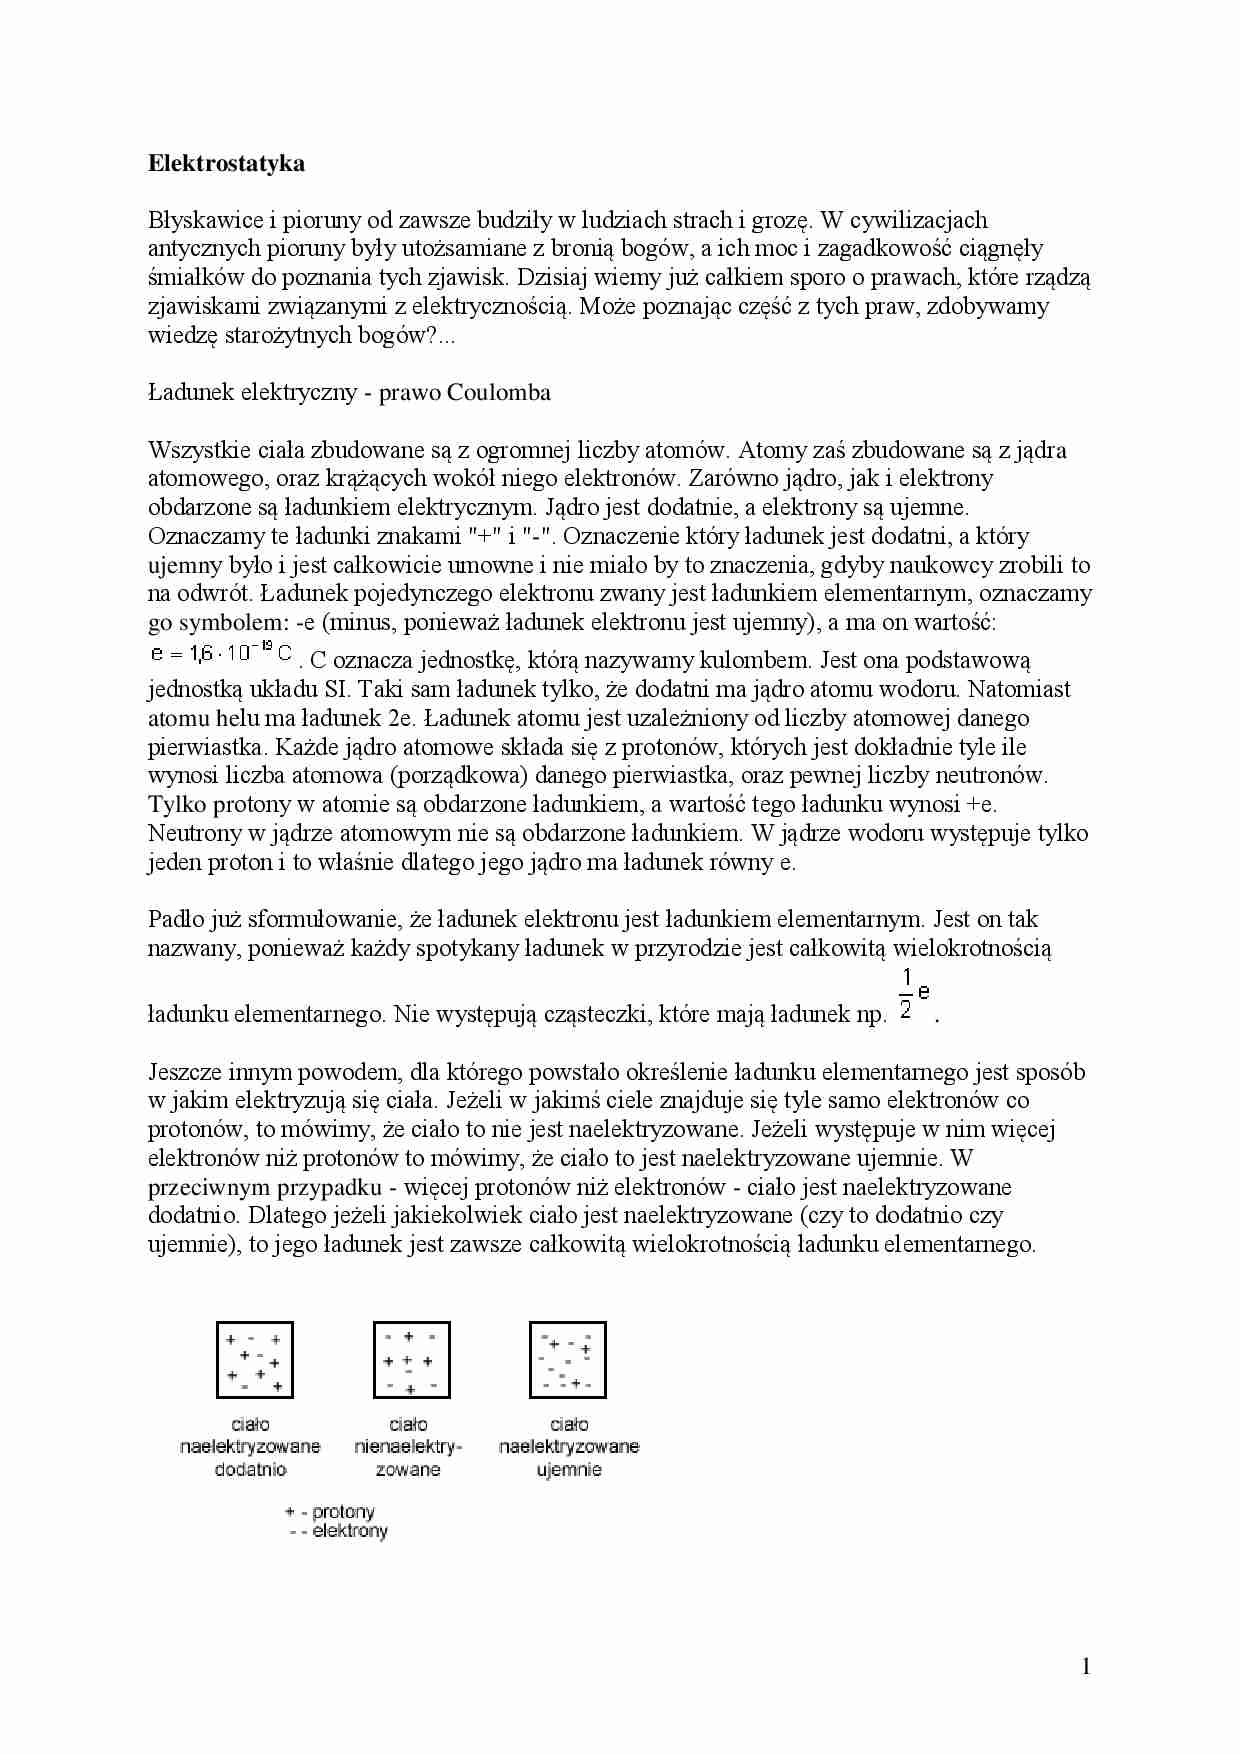 Elektrostatyka - Ładunek elektryczny - prawo Coulomba  - strona 1